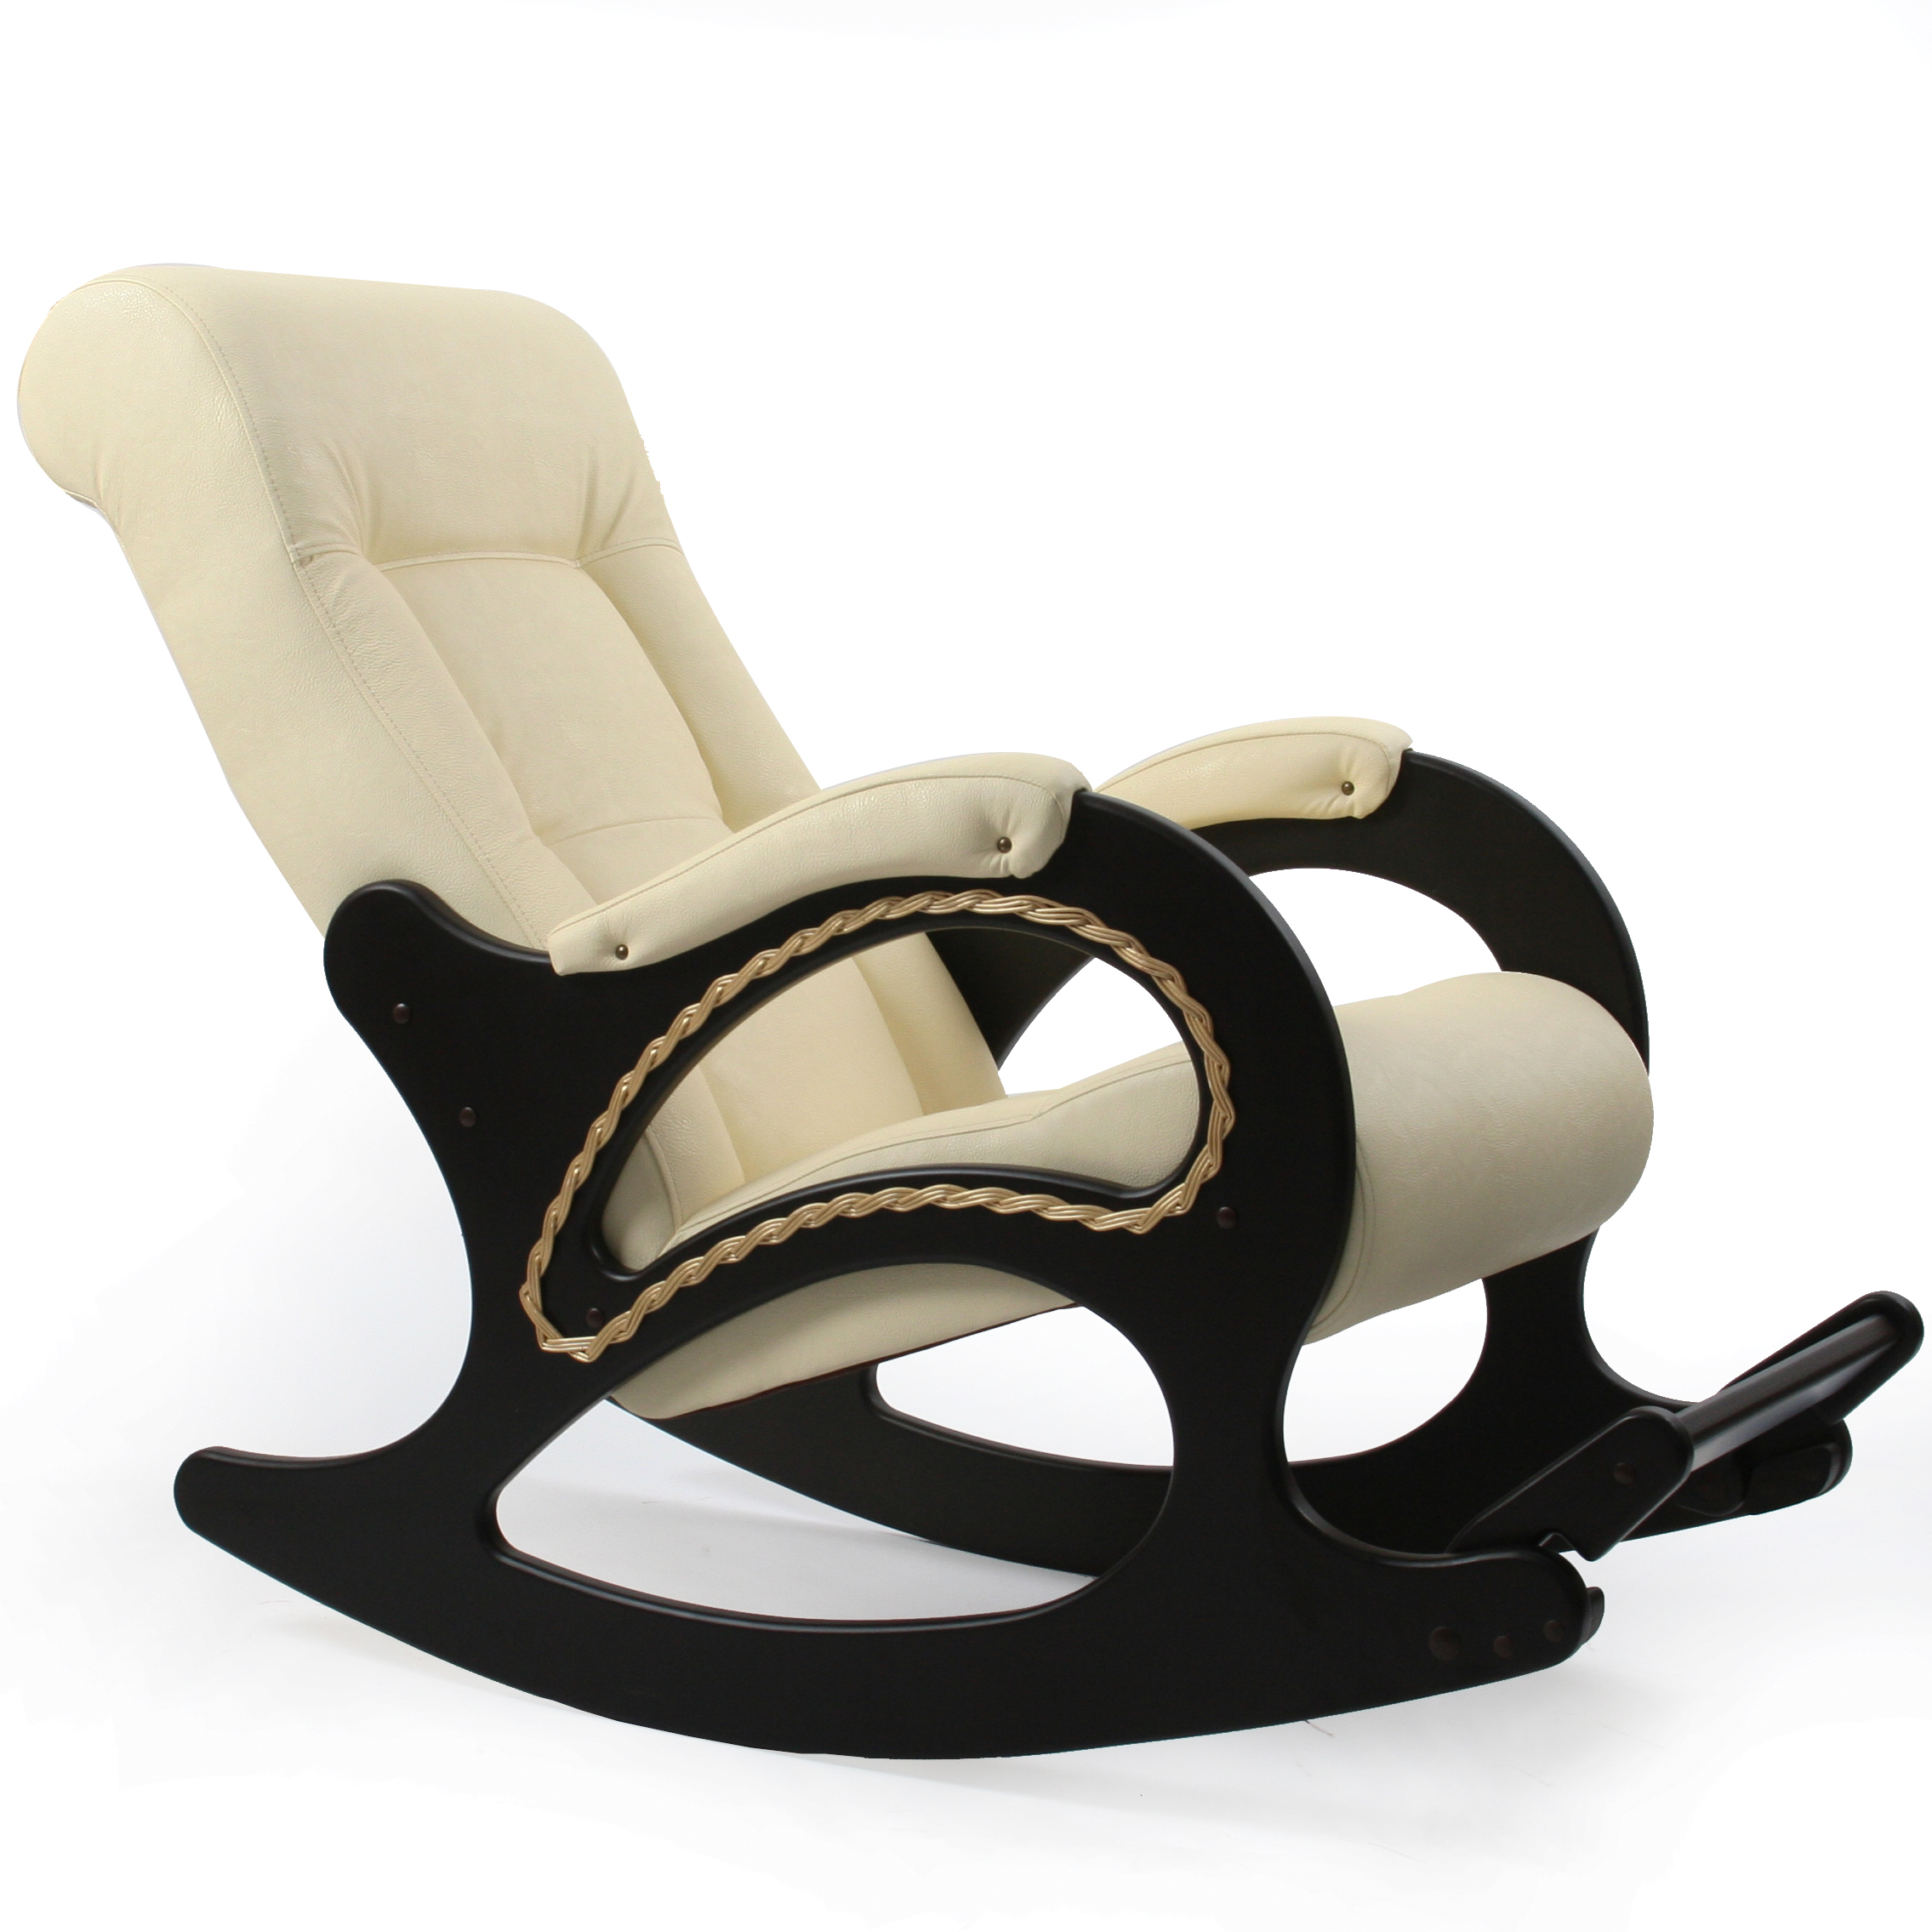 Модели кресла качалки. Кресло-качалка комфорт (мод.44/Дунди-112/венге). Кресло качалка модель 44 Импэкс. Кресло-качалка комфорт модель 44. Кресло качалка модель 44 Импекс.